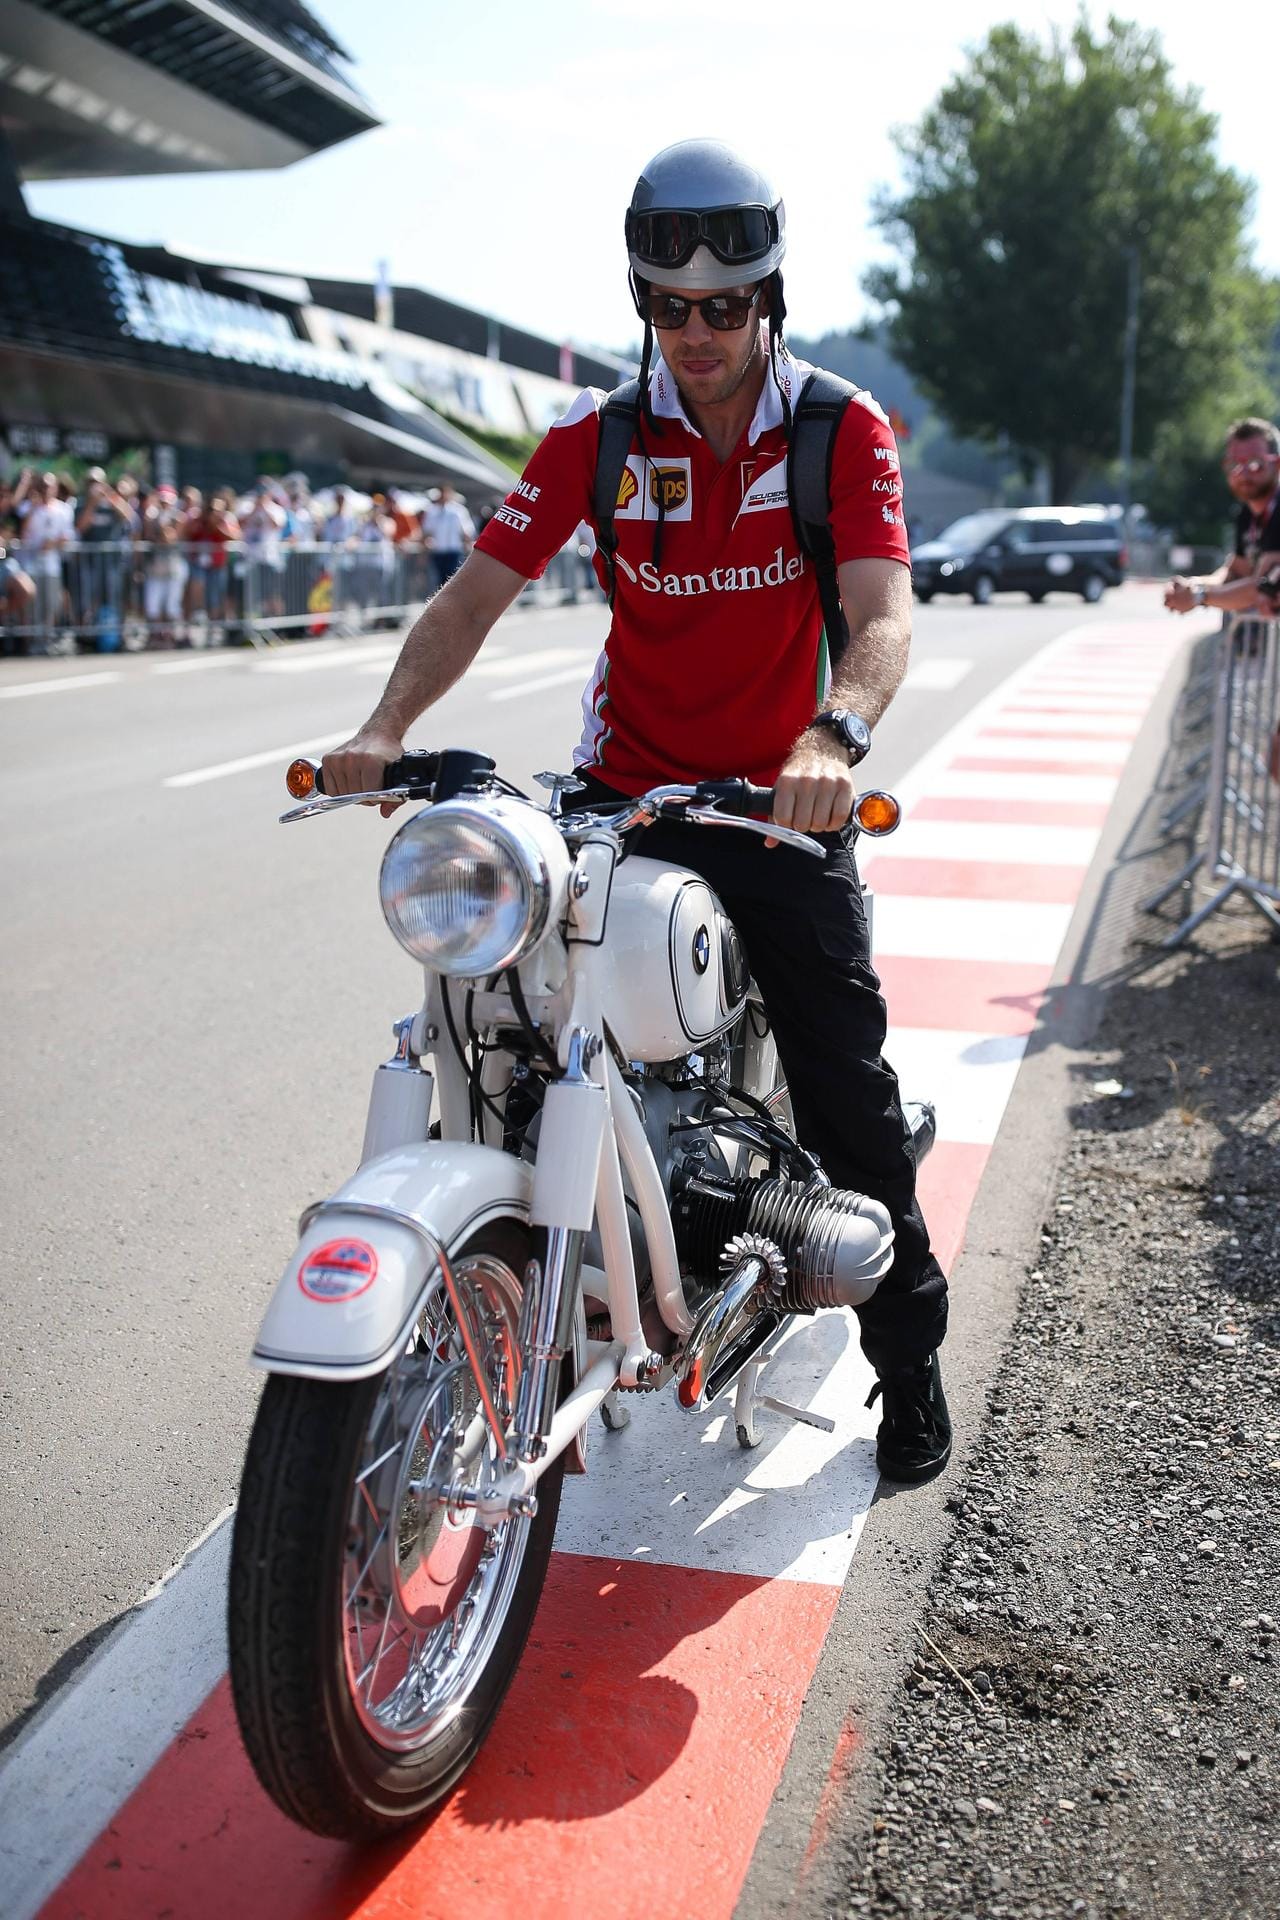 Starker Auftritt: Sebastian Vettel kommt mit einem alten BMW-Motorrad zur Rennstrecke.